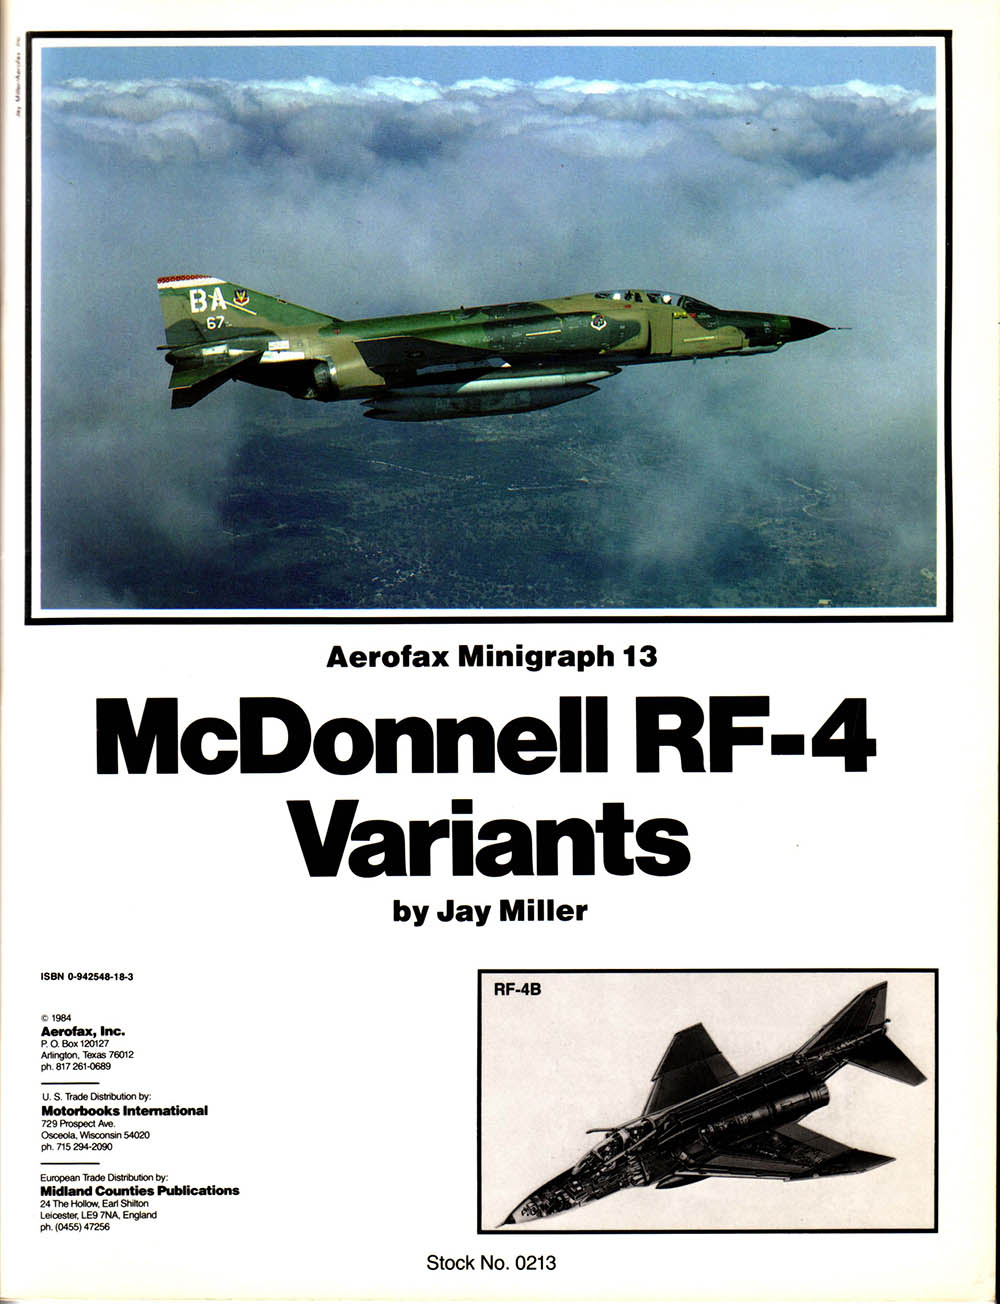 Minigraph - Aerofax Minigraph 13 McDonnell RF-4 Variants.jpg